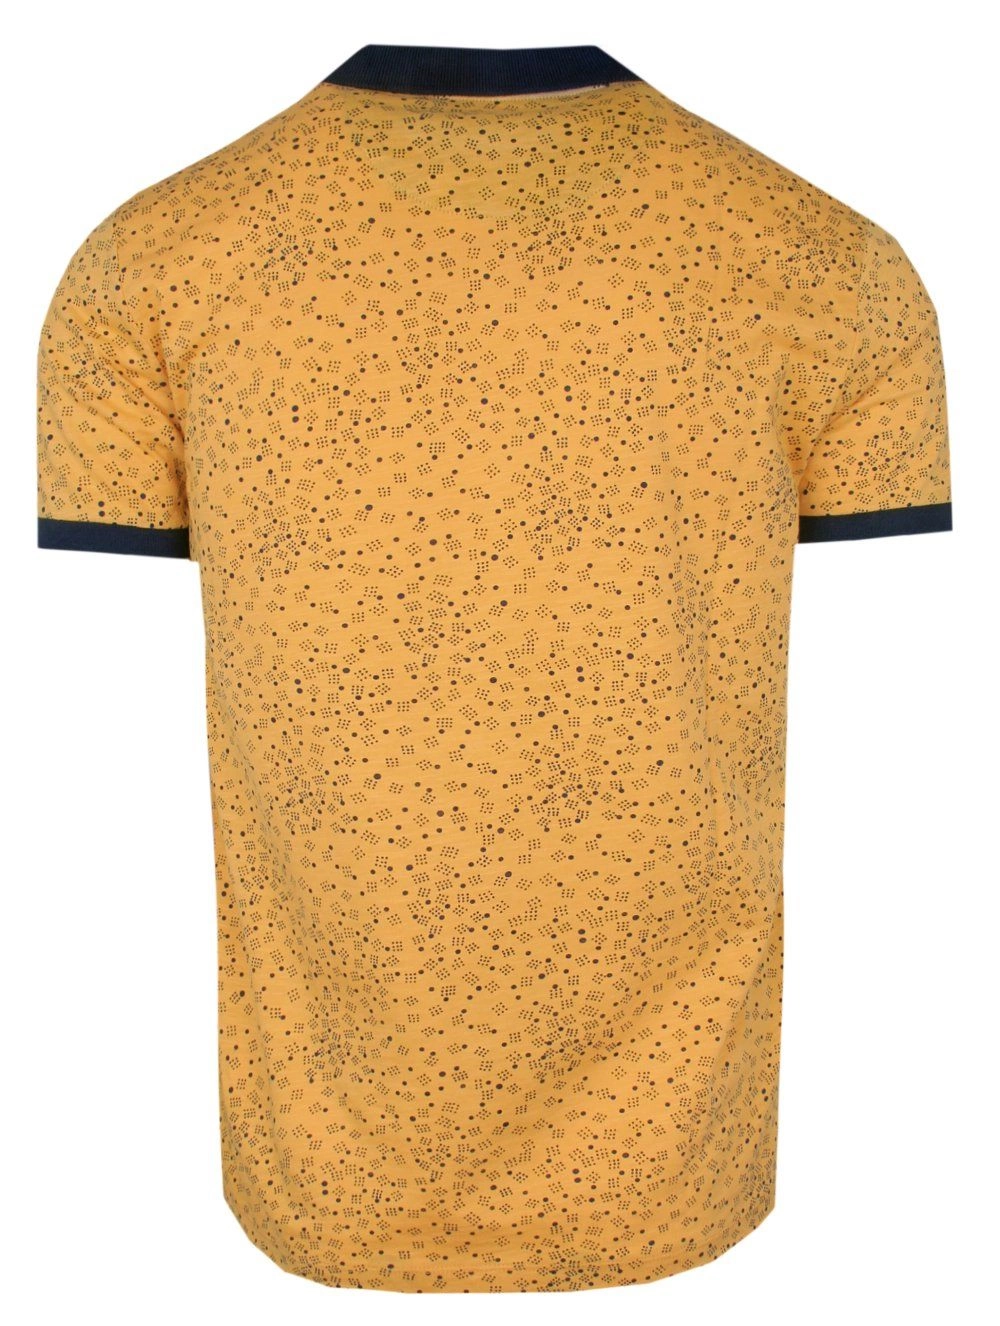 Koszulka POLO, Żółta, Wzór Geometryczny, Krótki Rękaw, Męska, z Nadrukiem